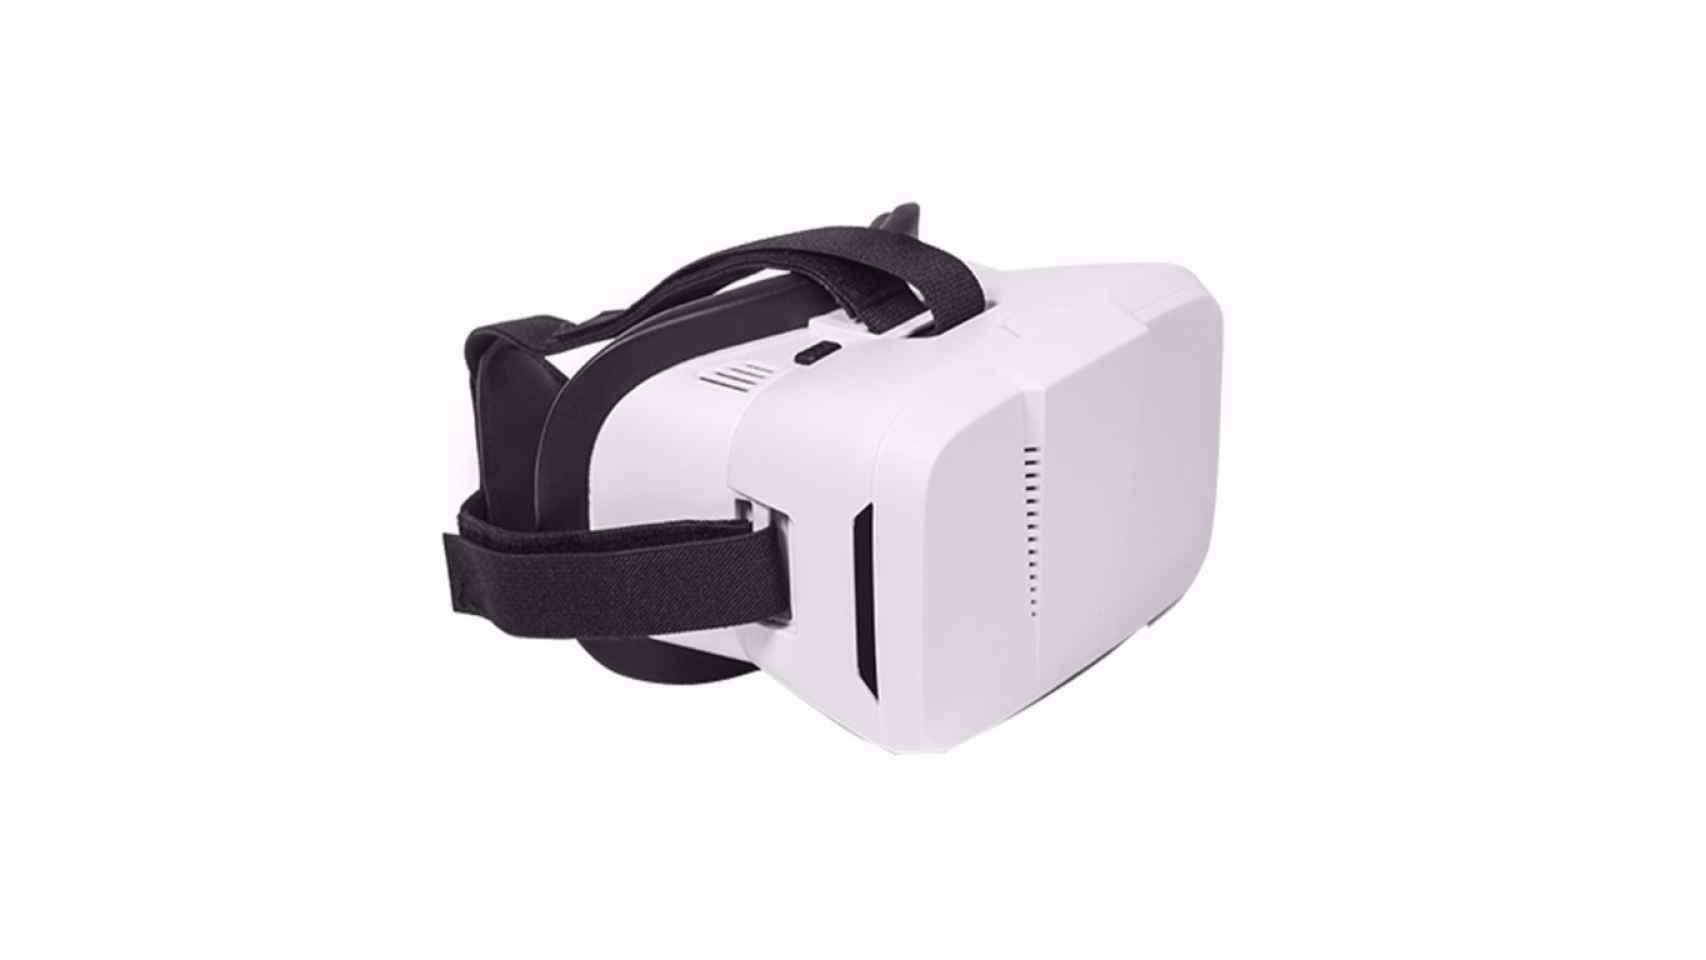 Unas gafas de realidad virtual puede ser uno de los regalos más originales e inesperados de esta Navidad. Puedes ver más propuestas como esta, aquí.